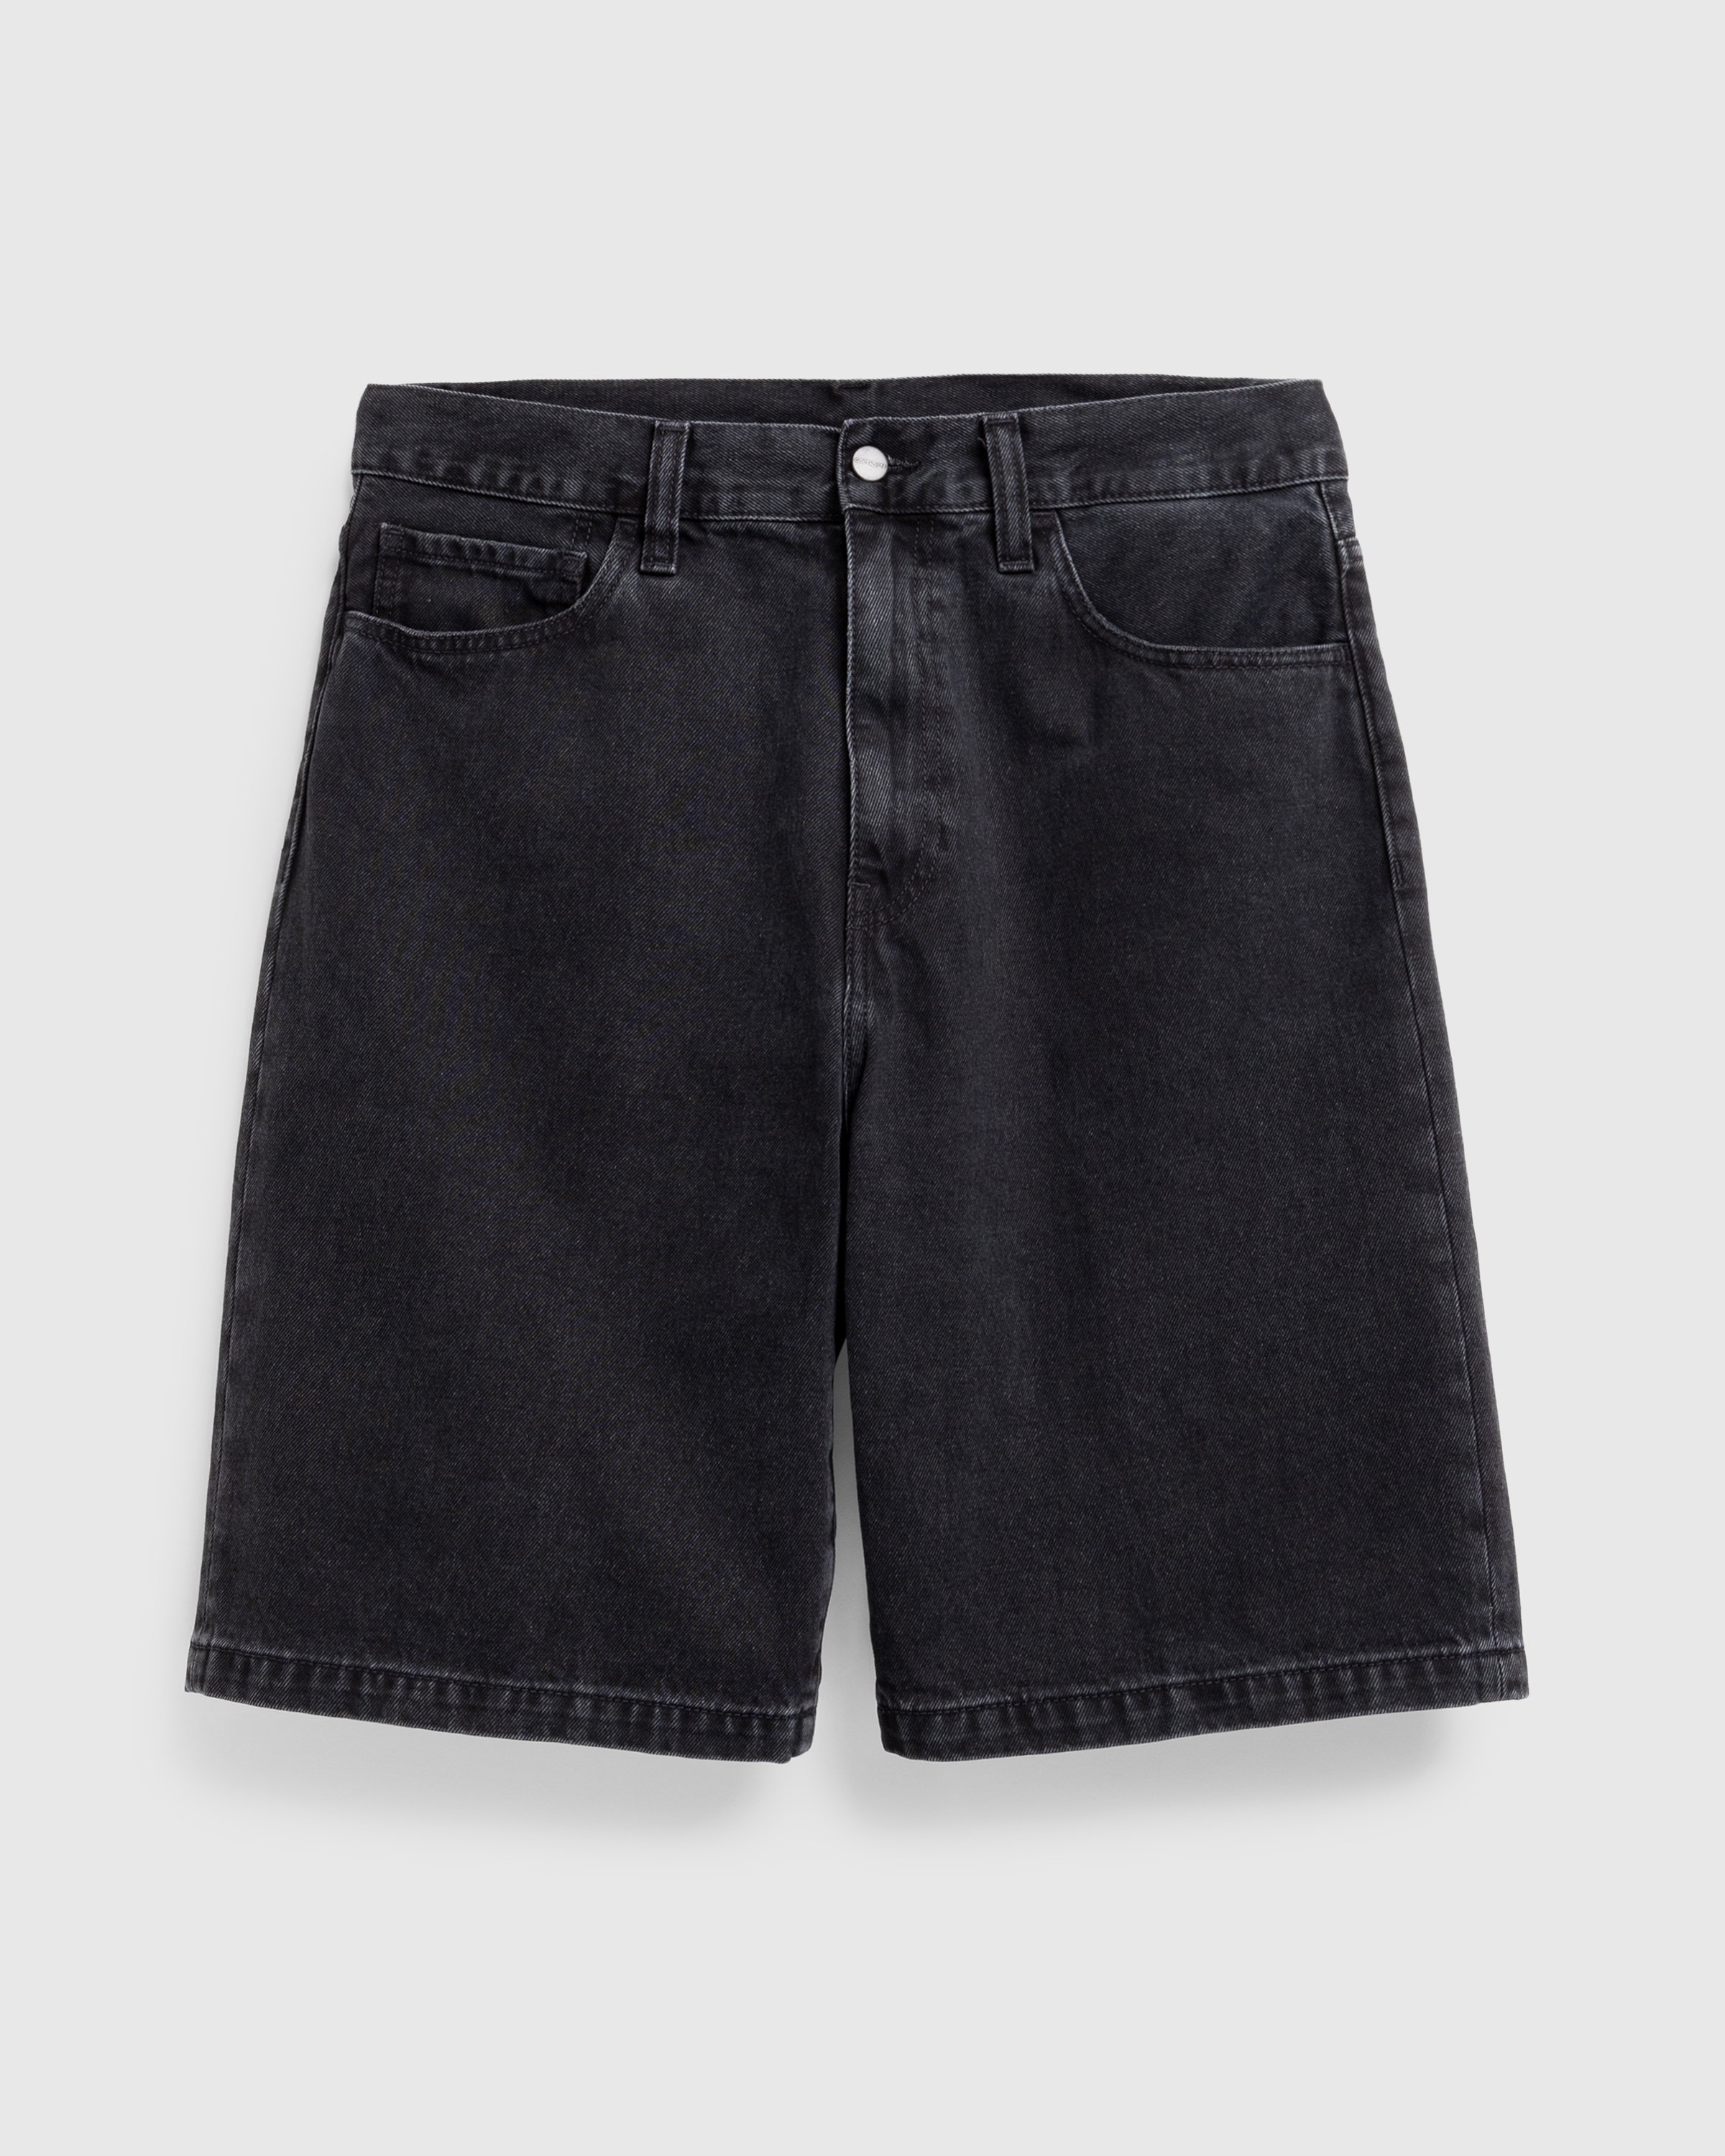 Carhartt WIP - Landon Short Black /stone washed - Clothing - Black - Image 1